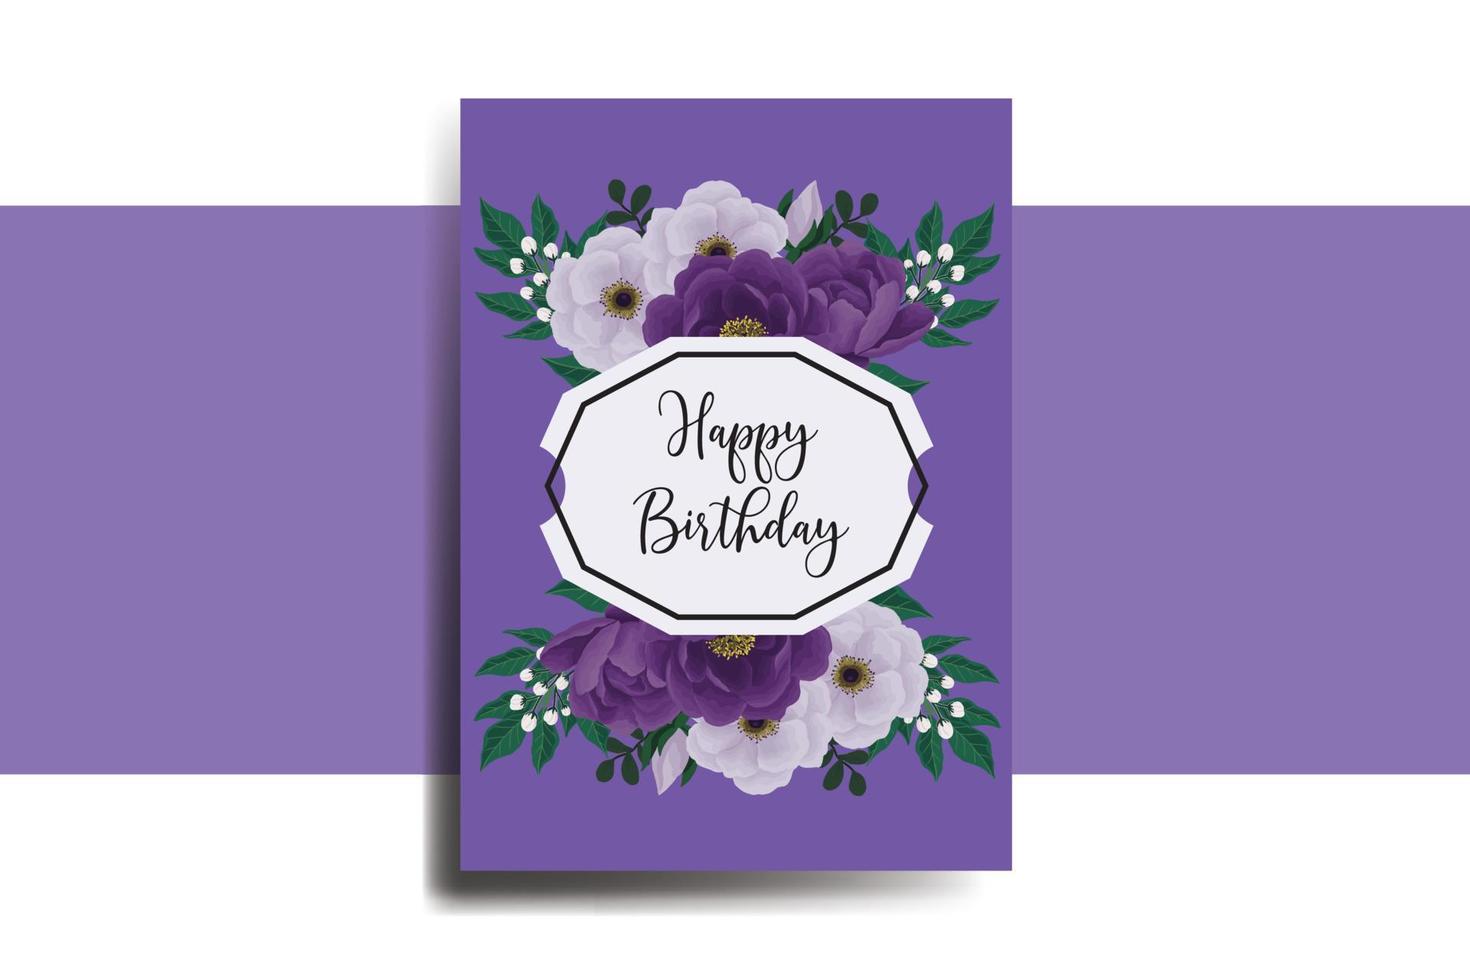 tarjeta de felicitación tarjeta de cumpleaños acuarela digital dibujado a mano plantilla de diseño de flor de peonía púrpura vector